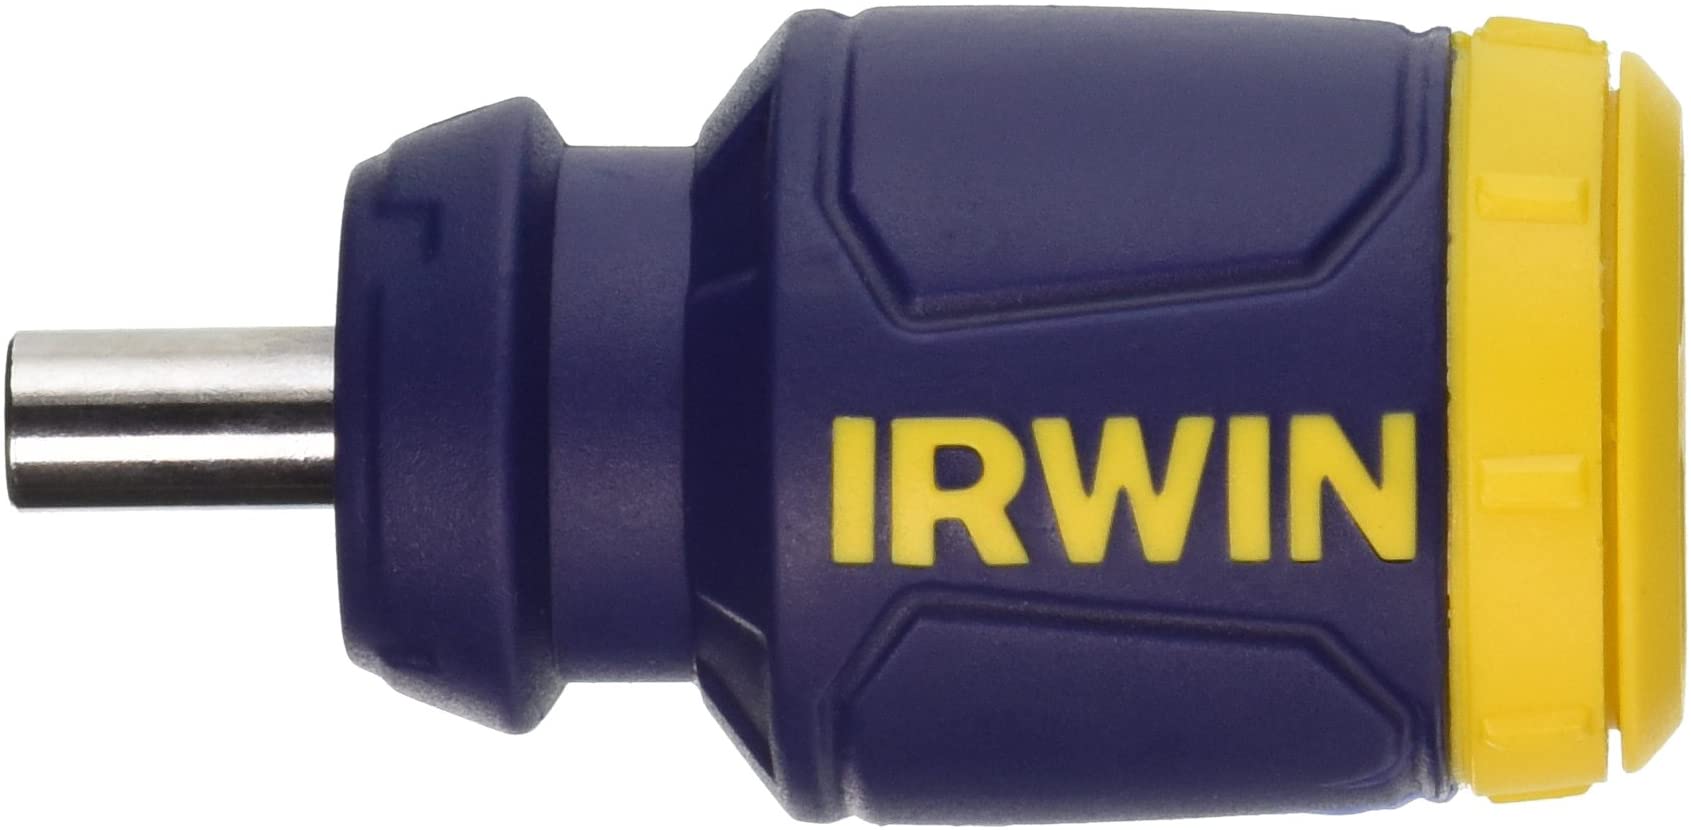 IRWIN Screwdriver, 7-Piece Bits. $3.90 @ Amazon